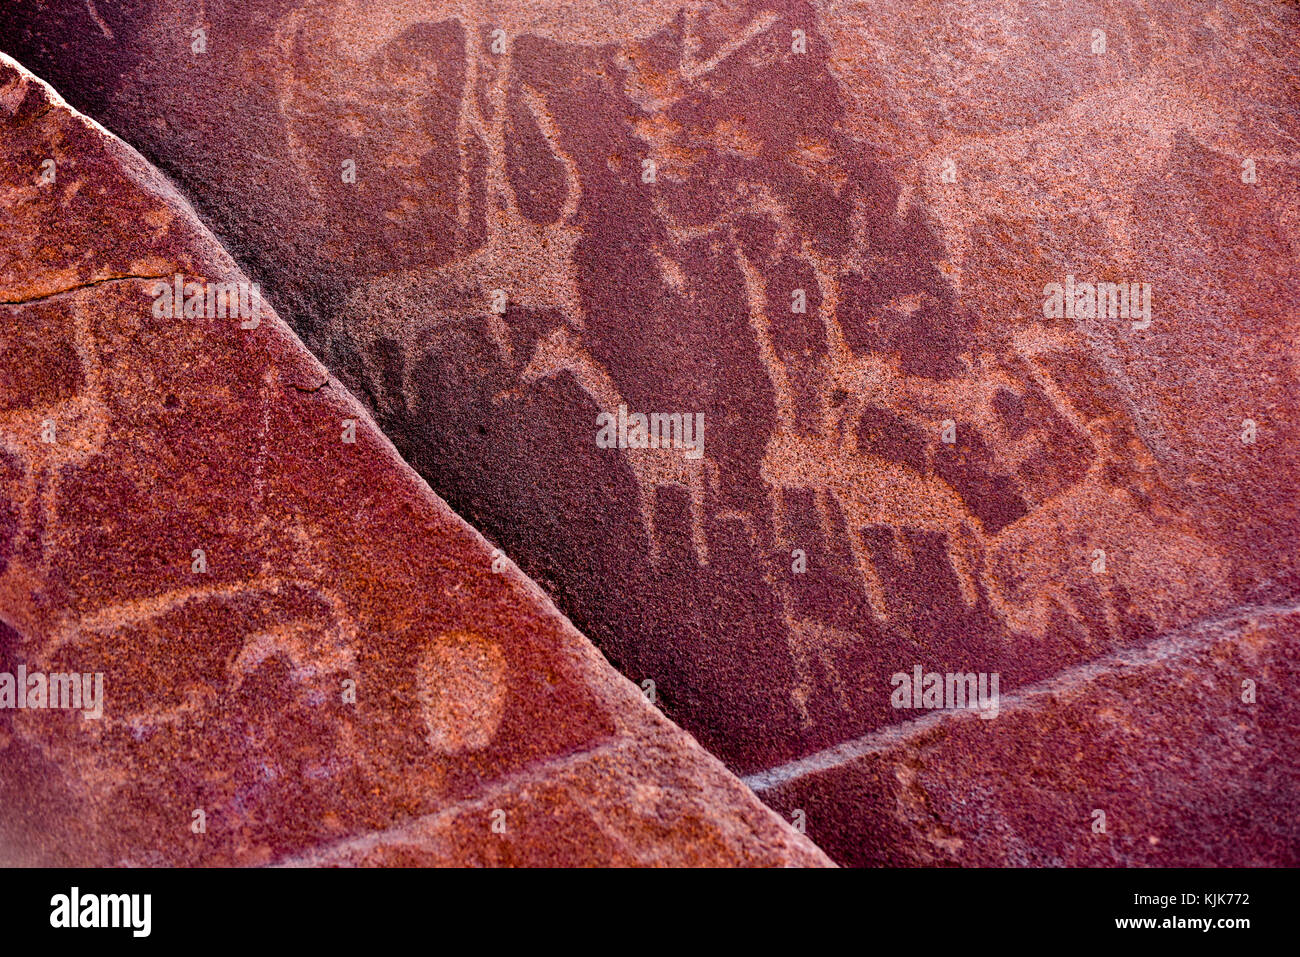 Bushman prähistorischen Felsgravuren in der Unesco World Heritage Center in Twyfelfontein, Namibia. Stockfoto